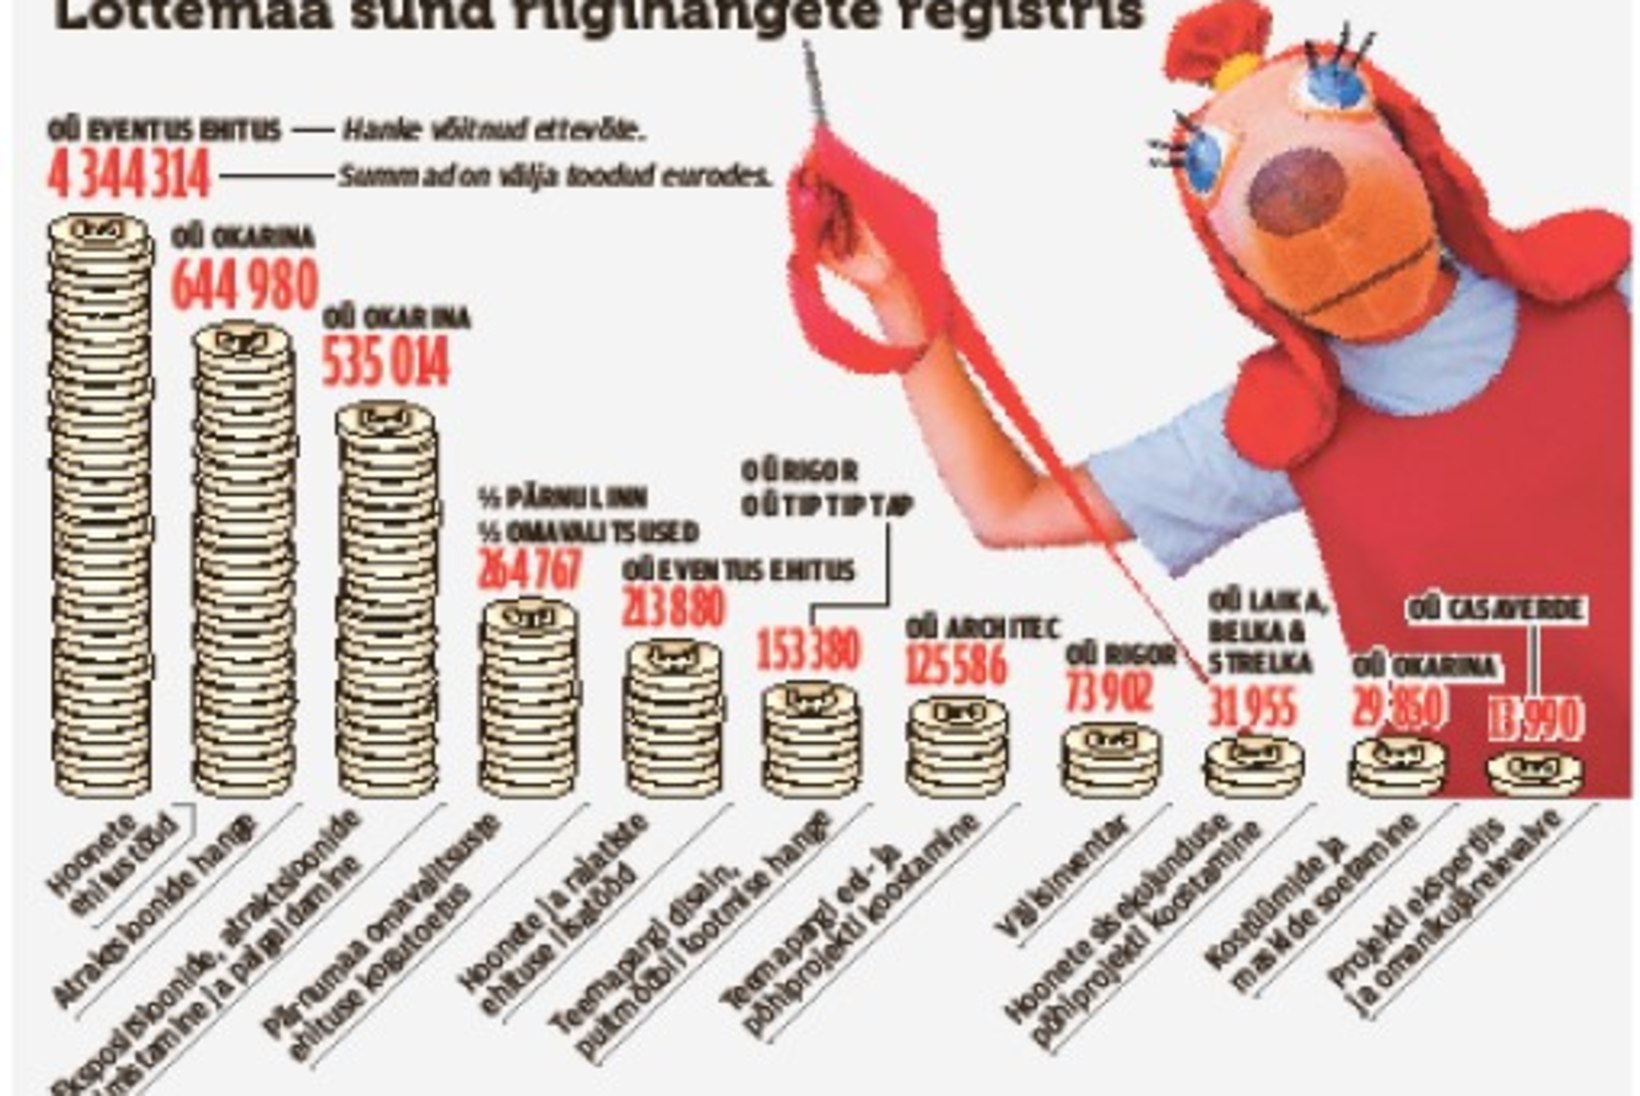 Kähku tehtud kallikene: Lottemaa neelas peaaegu viis miljonit eurot maksumaksja raha